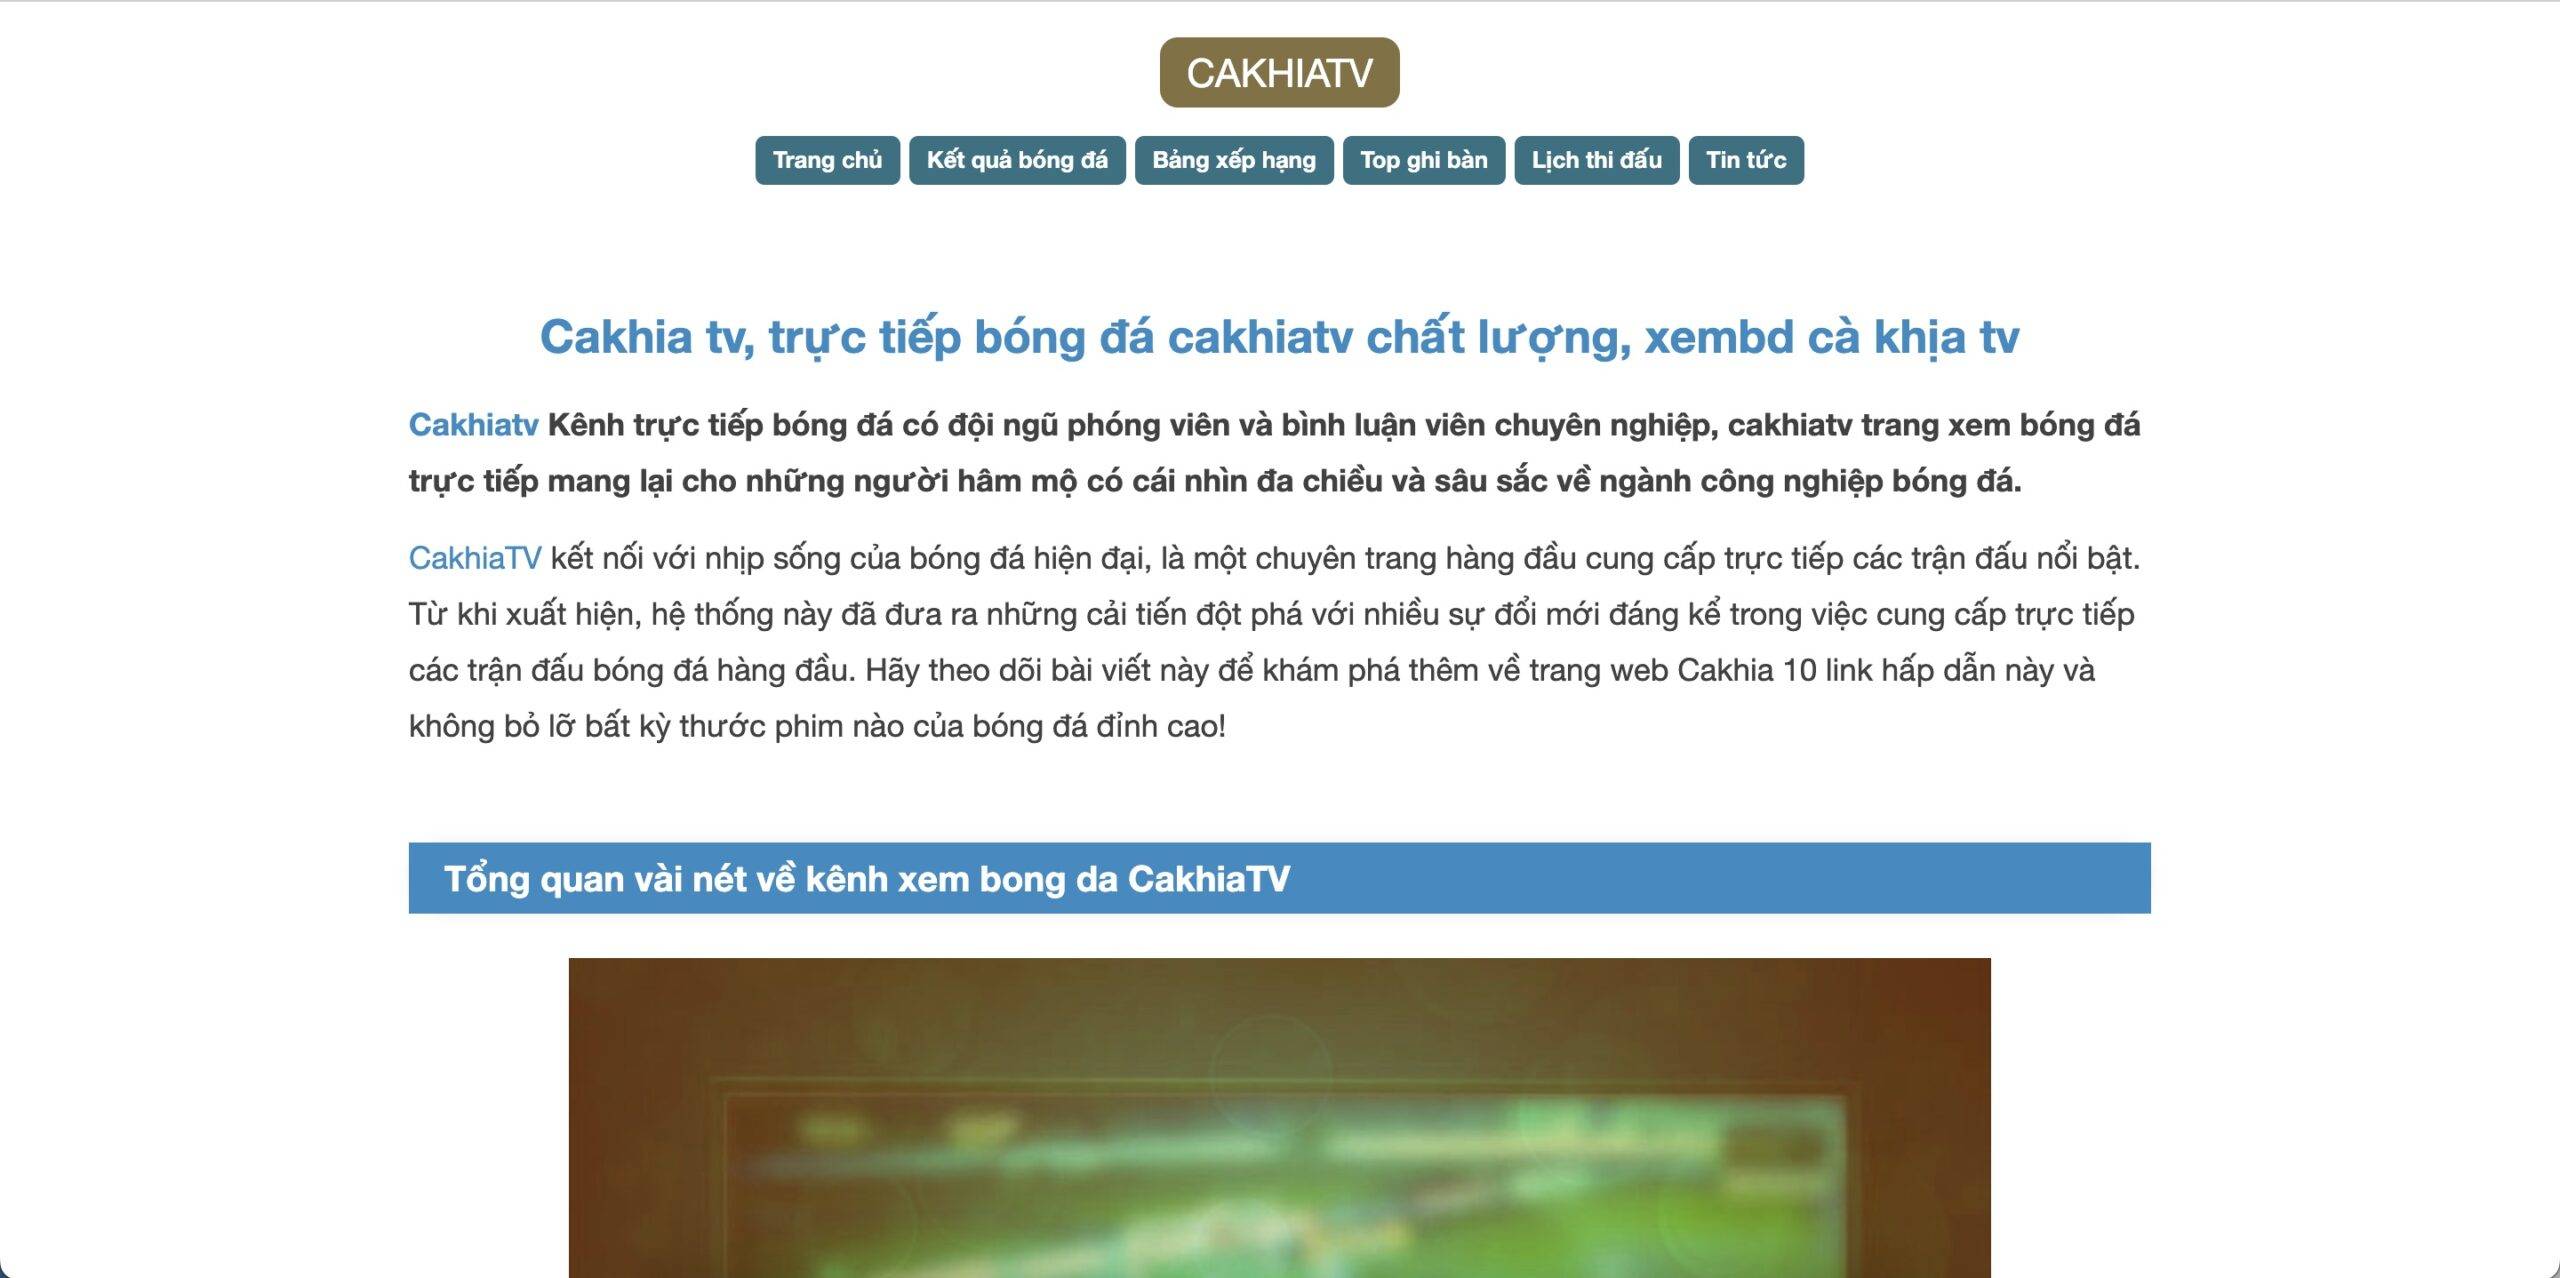 Cakhiatv là lựa chọn hàng đầu cho người đam mê bóng đá